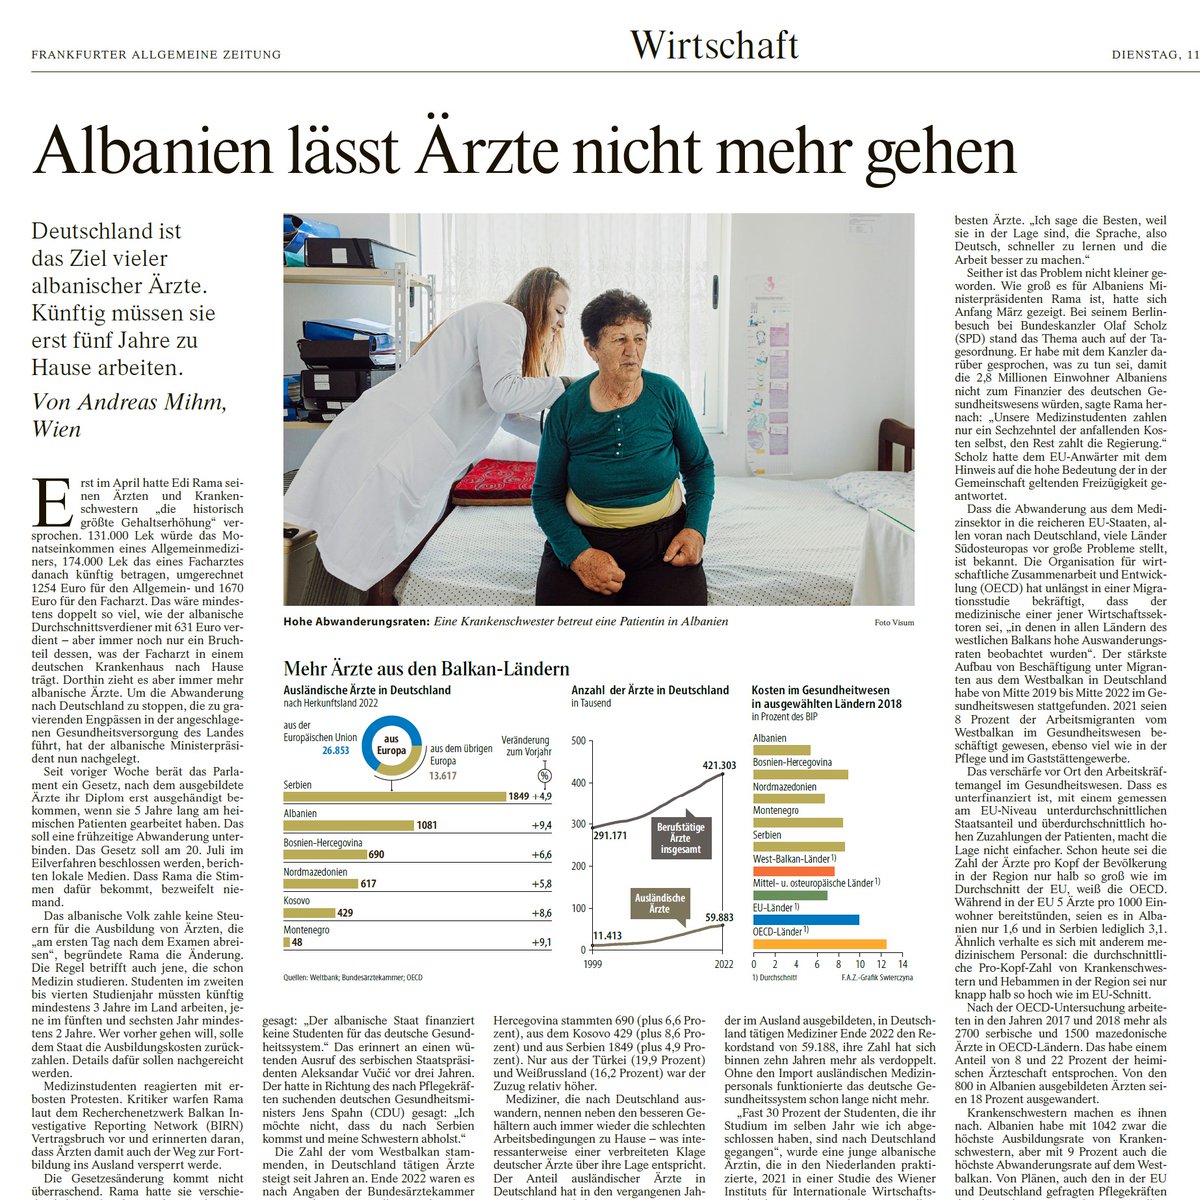 Die 'Frankfurter Allgemeine Zeitung' (@faznet) zitiert eine Studie von uns zur Abwanderung von Fachkräften aus Albanien.